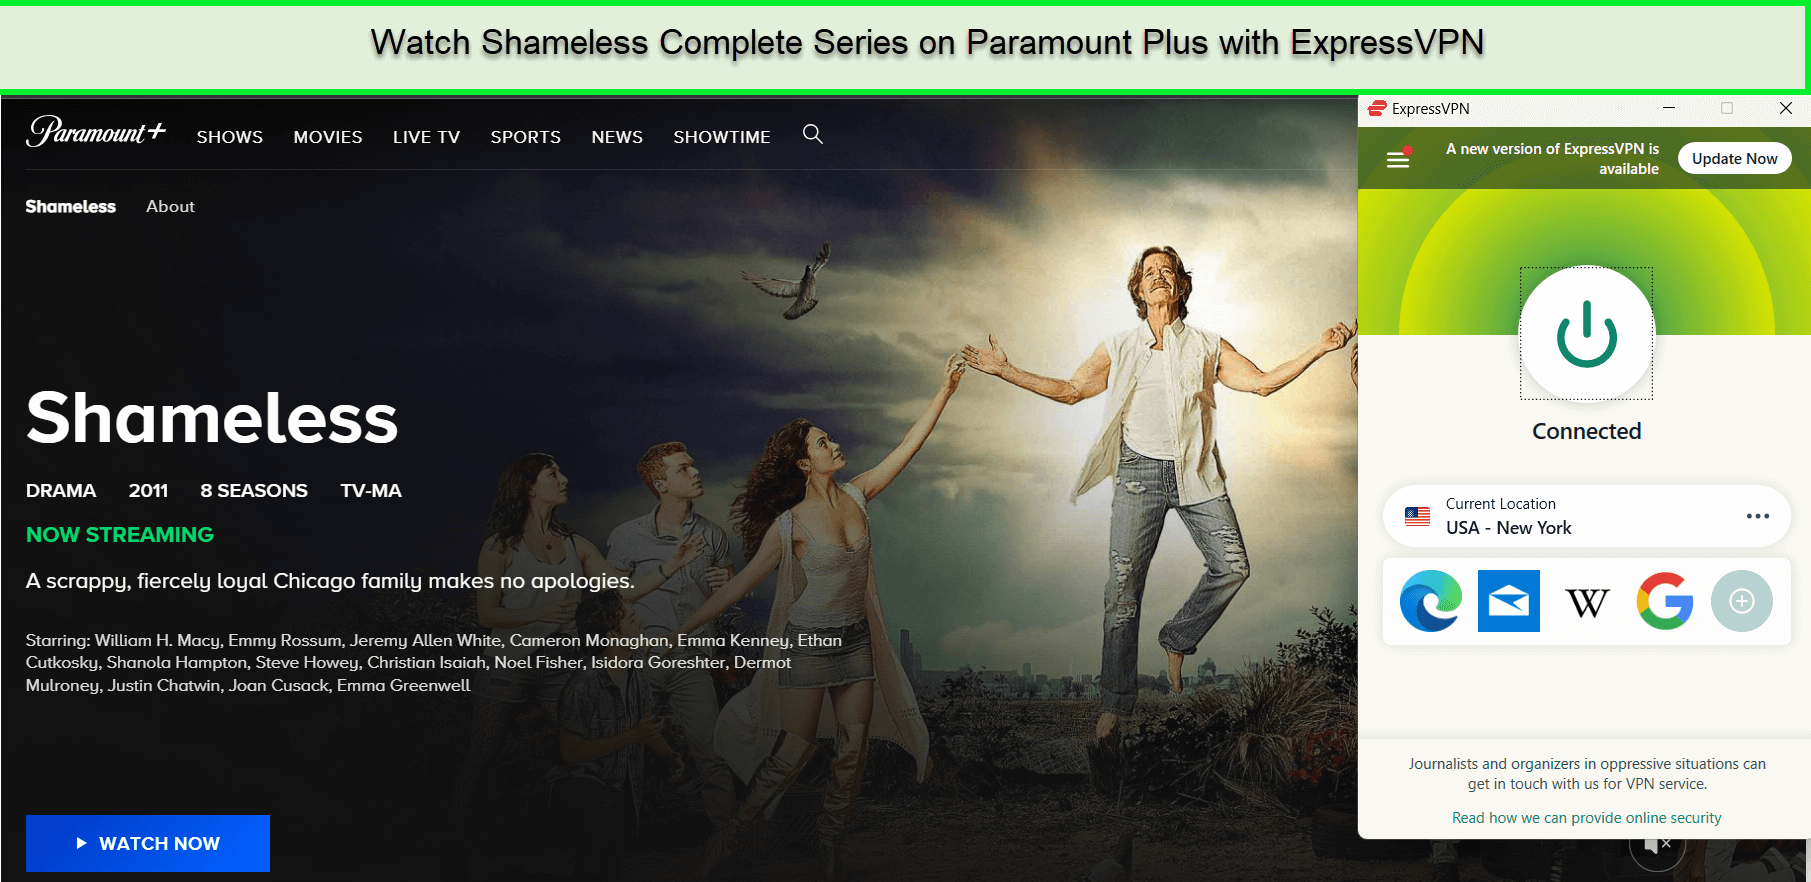  Schauen Sie sich die komplette Serie Shameless an.  -  Auf Paramount Plus 